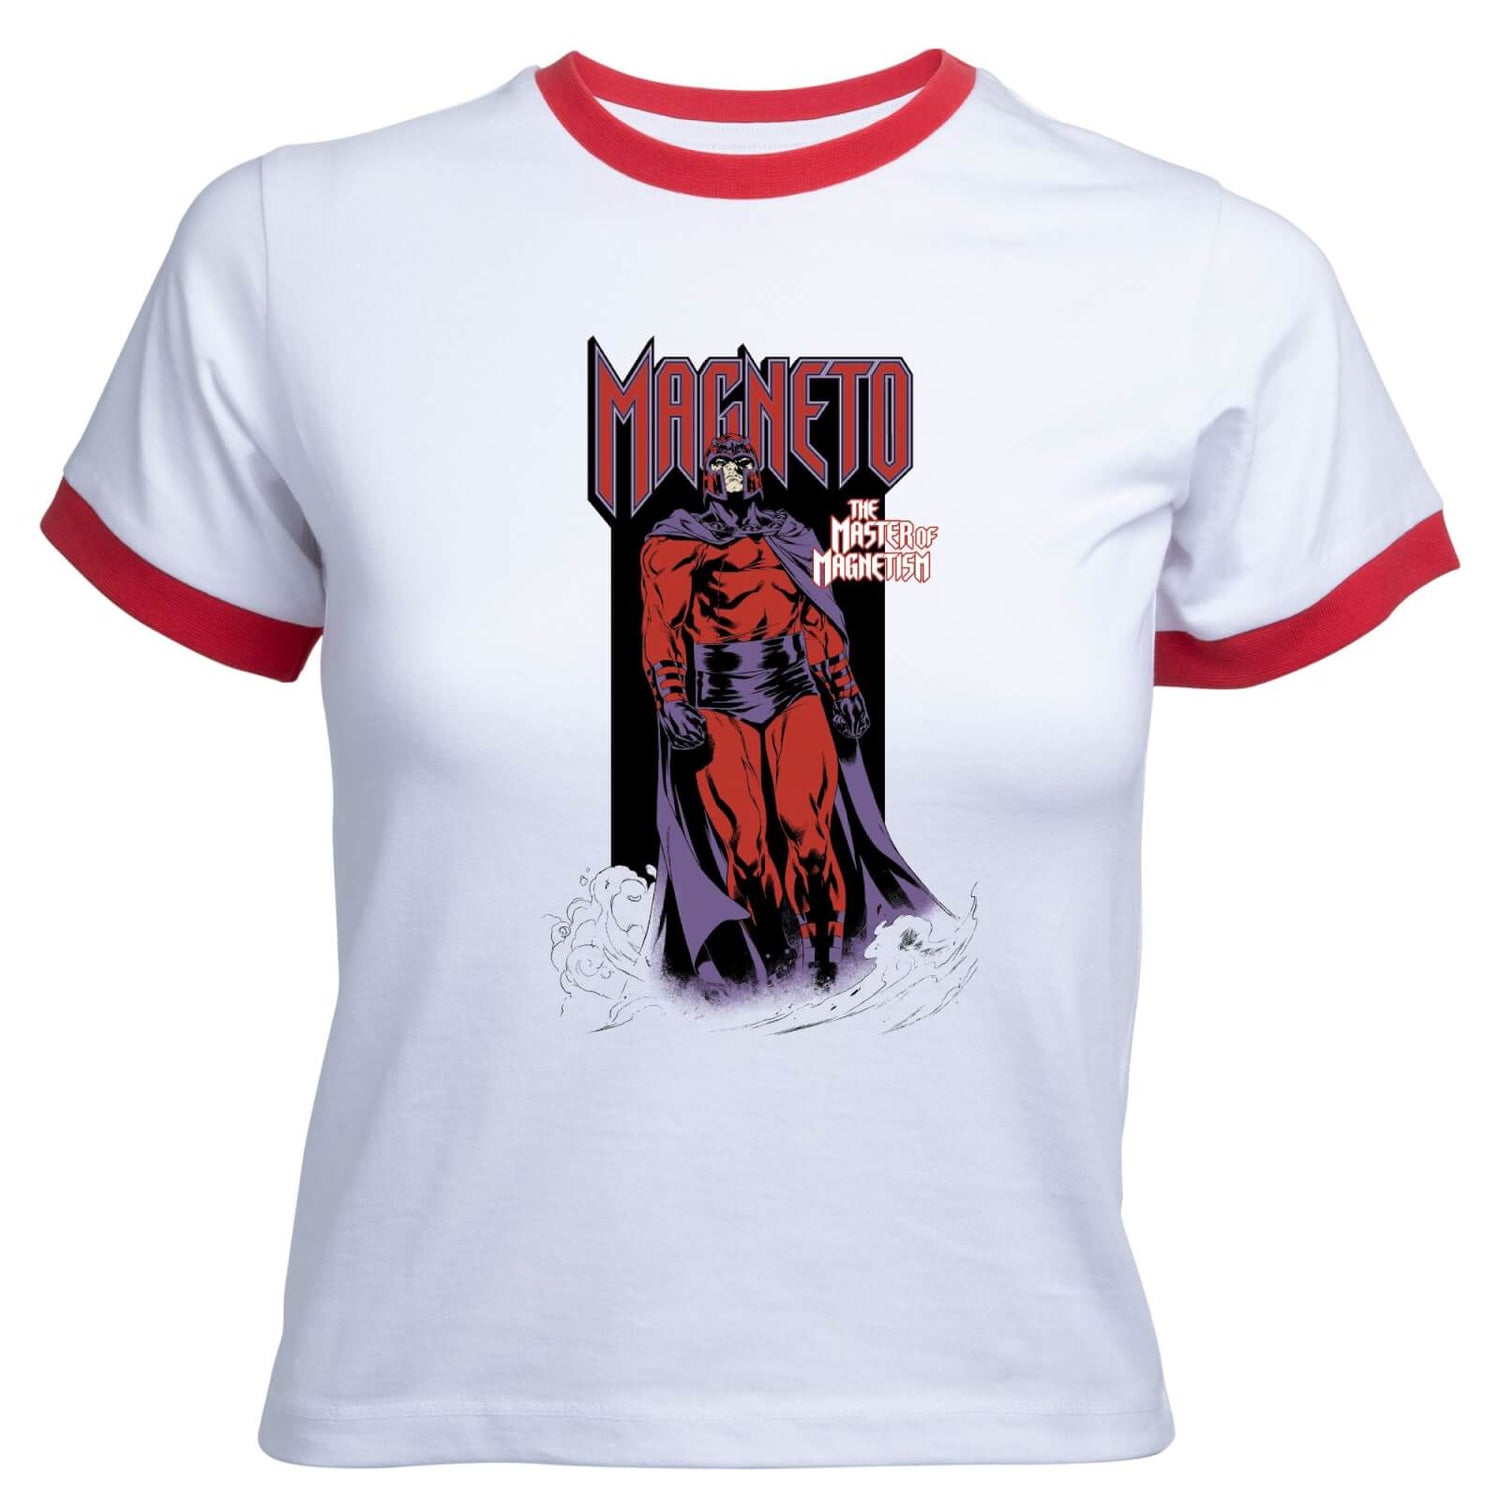 X-Men Magneto Master Of Magnetism Women's Cropped Ringer T-Shirt - White Red